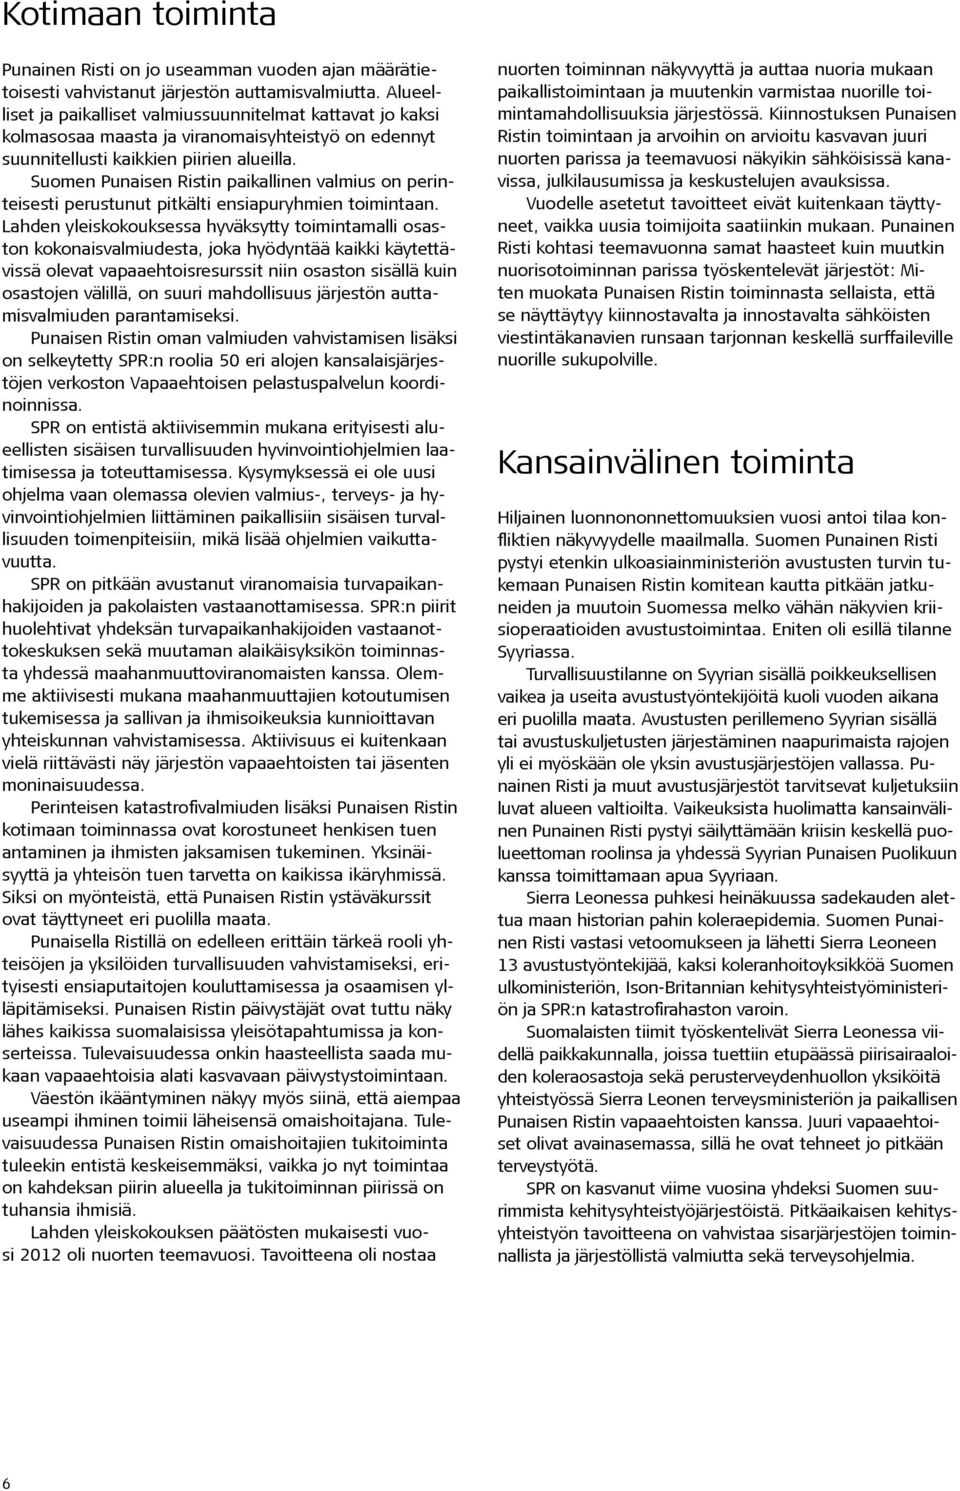 Suomen Punaisen Ristin paikallinen valmius on perinteisesti perustunut pitkälti ensiapuryhmien toimintaan.